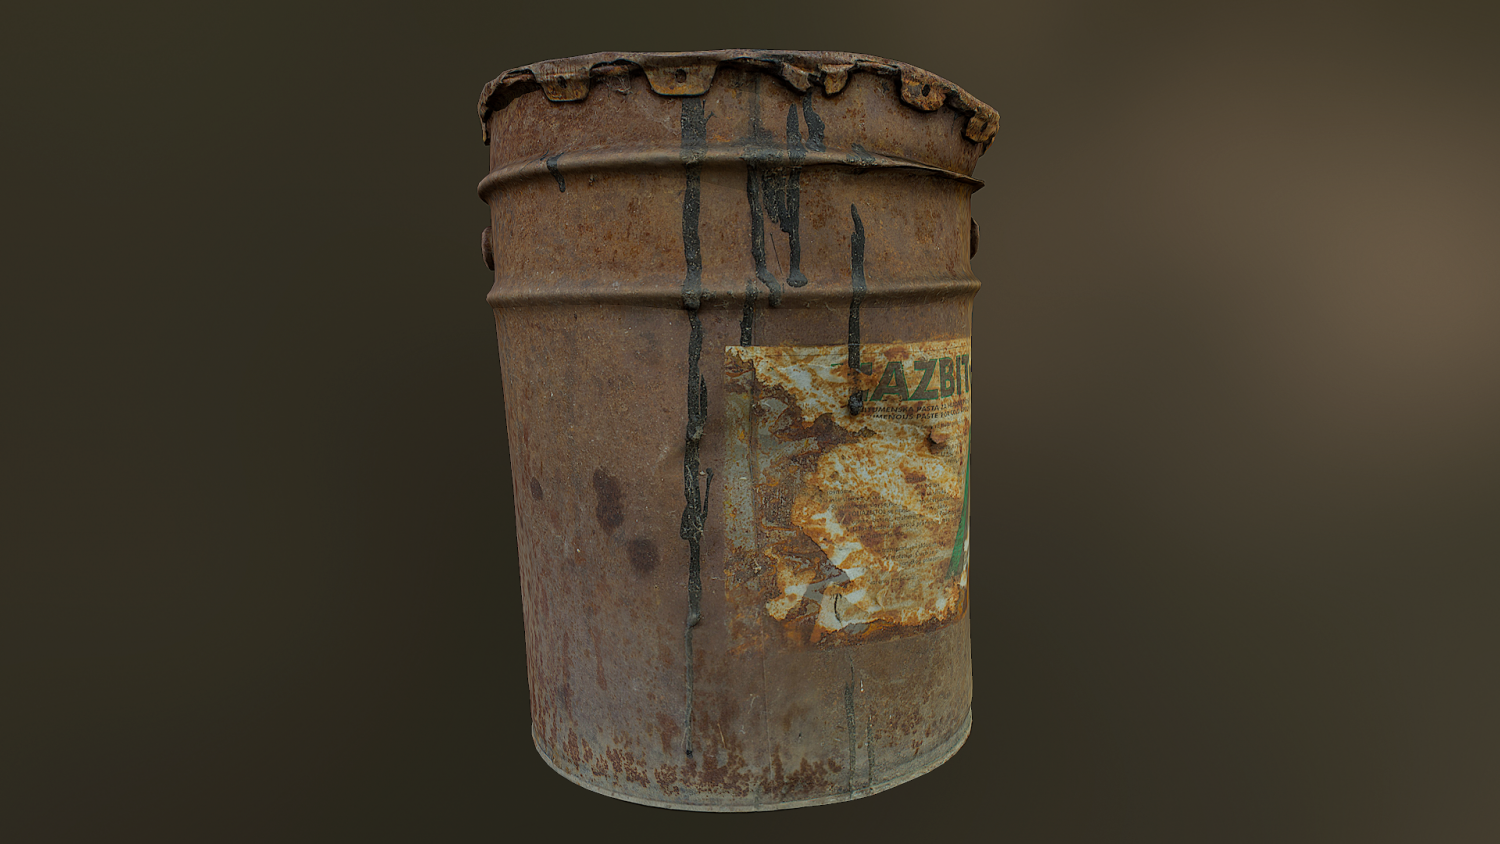 Instant barrel rust фото 59